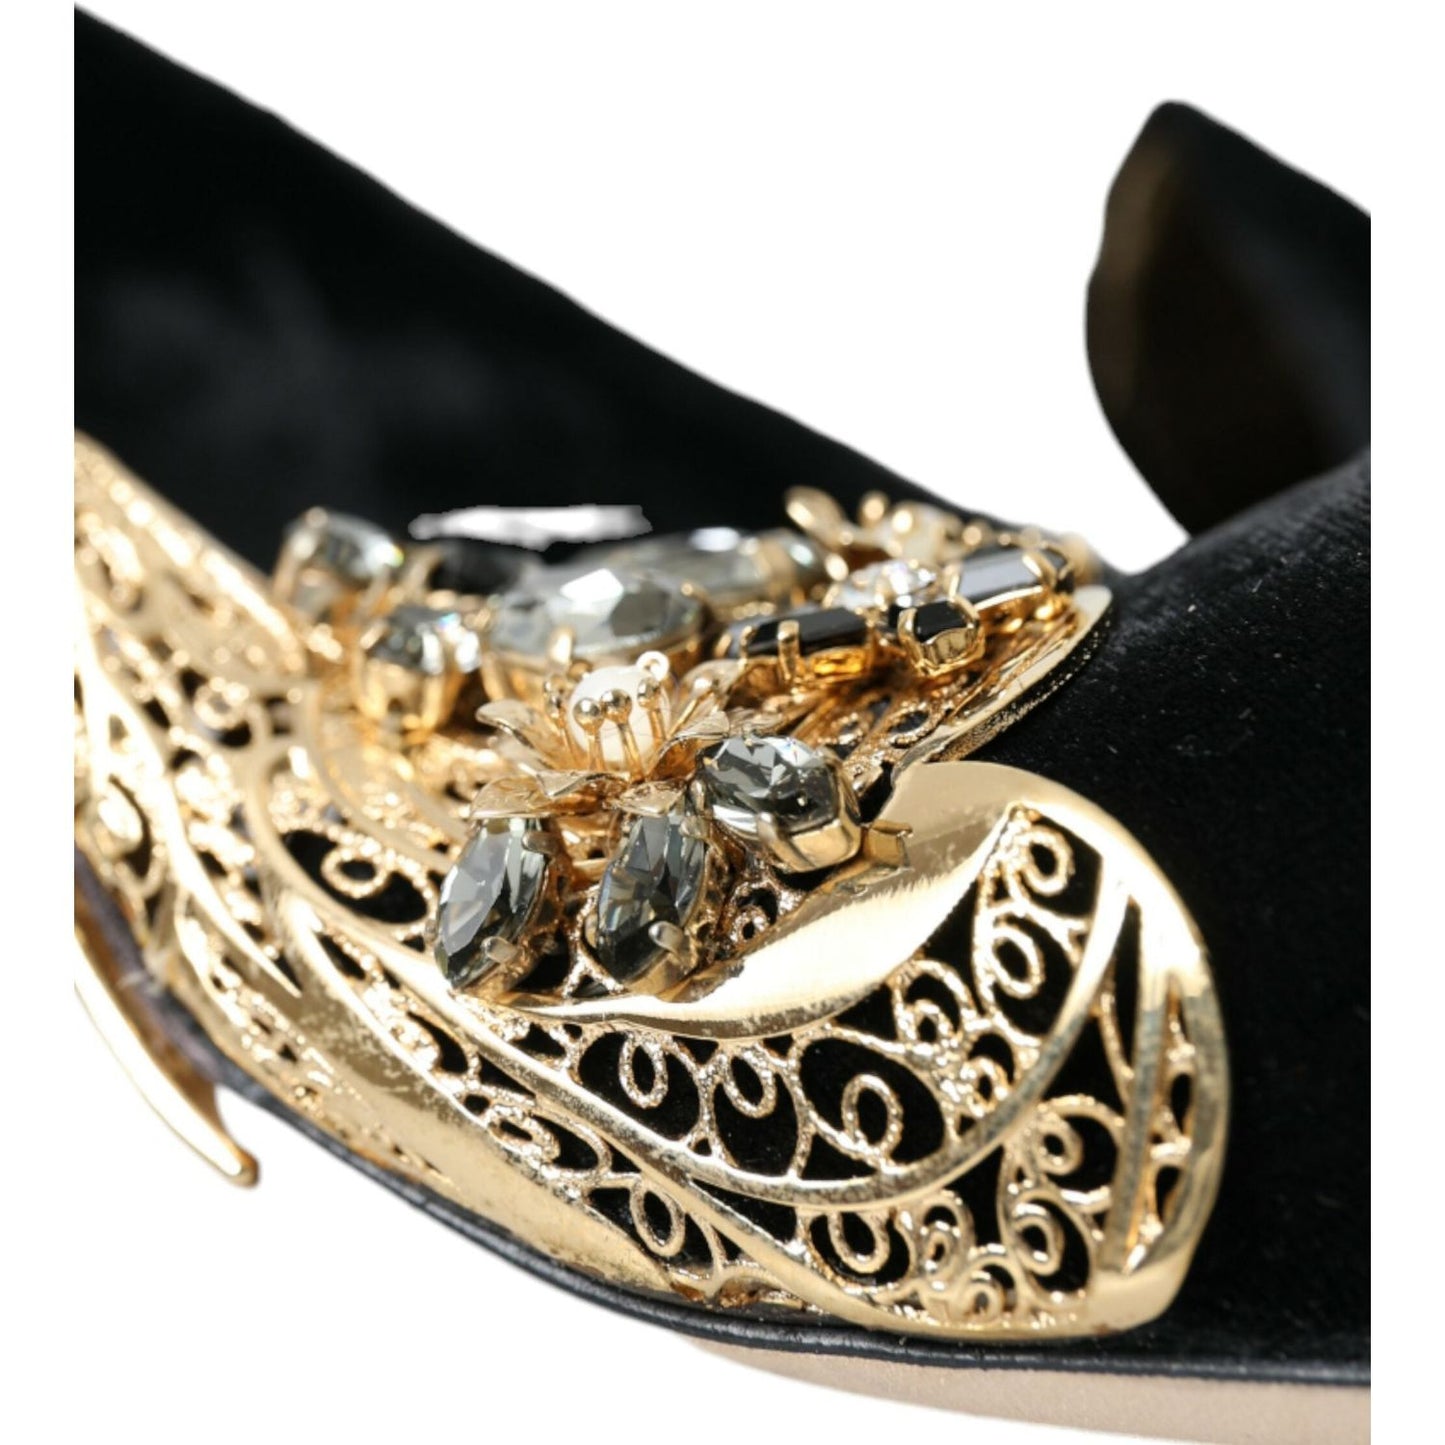 Dolce & Gabbana Black Velvet Embellished Heels Pumps Shoes black-velvet-embellished-heels-pumps-shoes